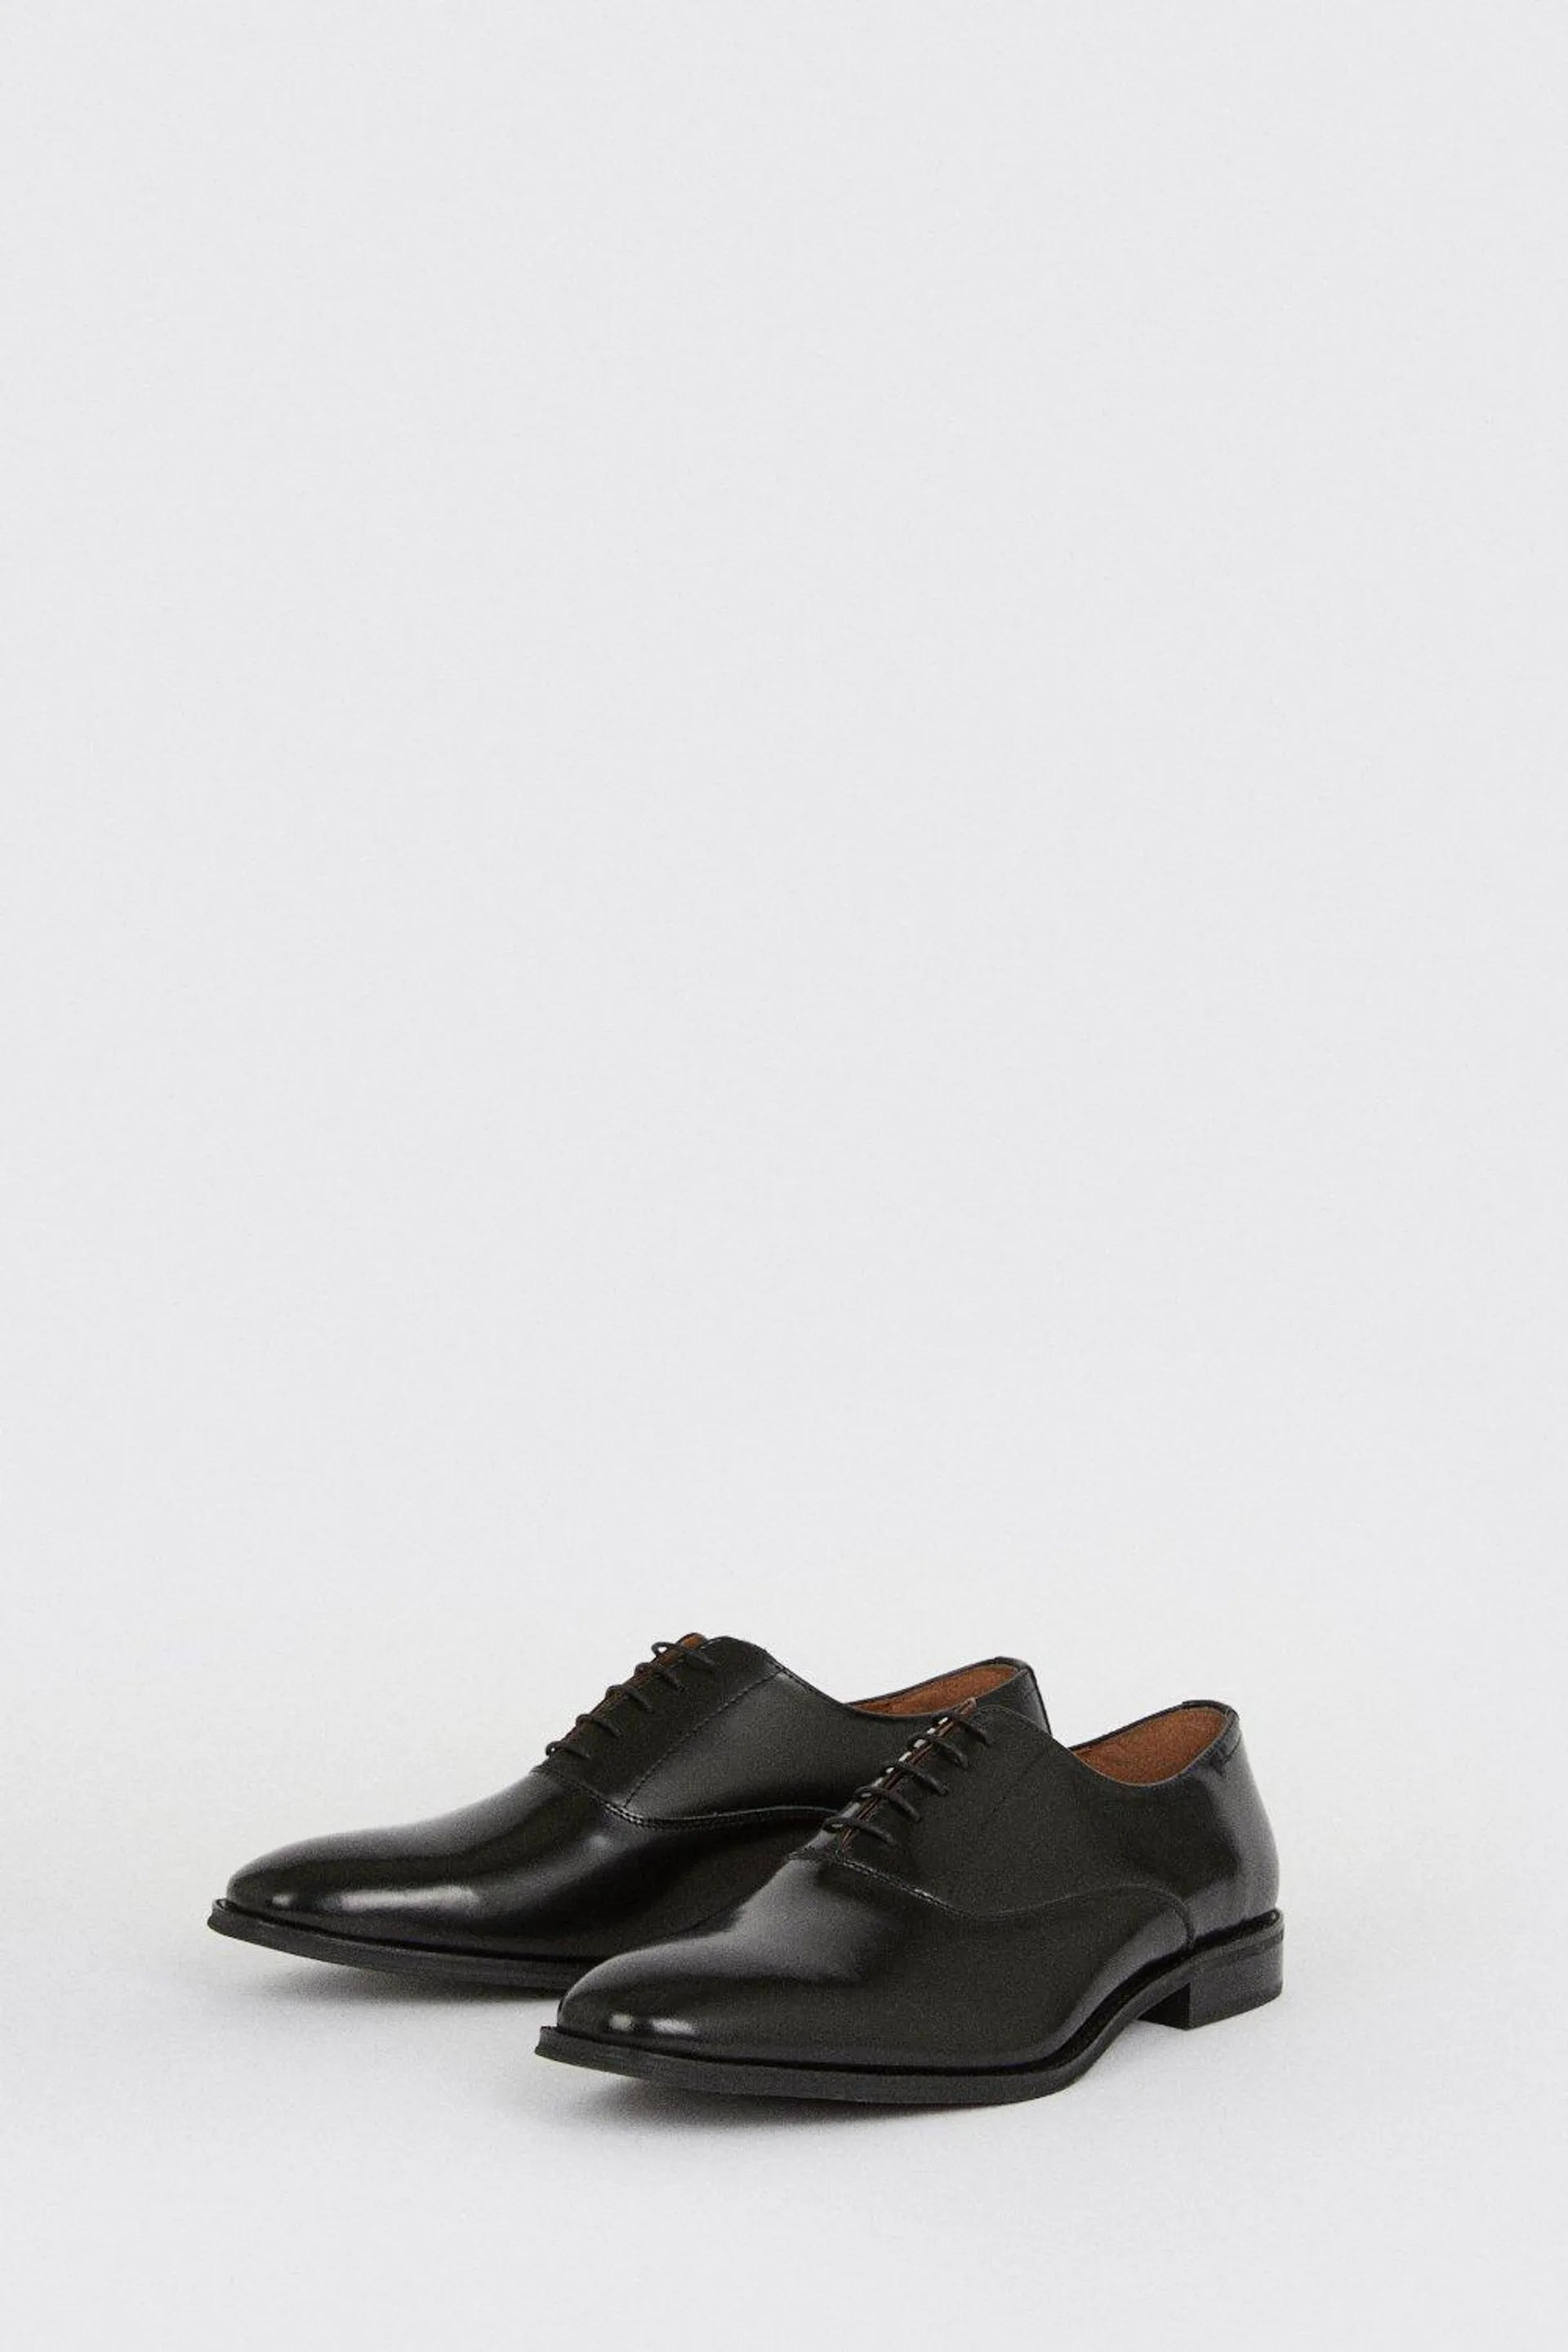 Black 1904 Leather Plain Oxford Shoes